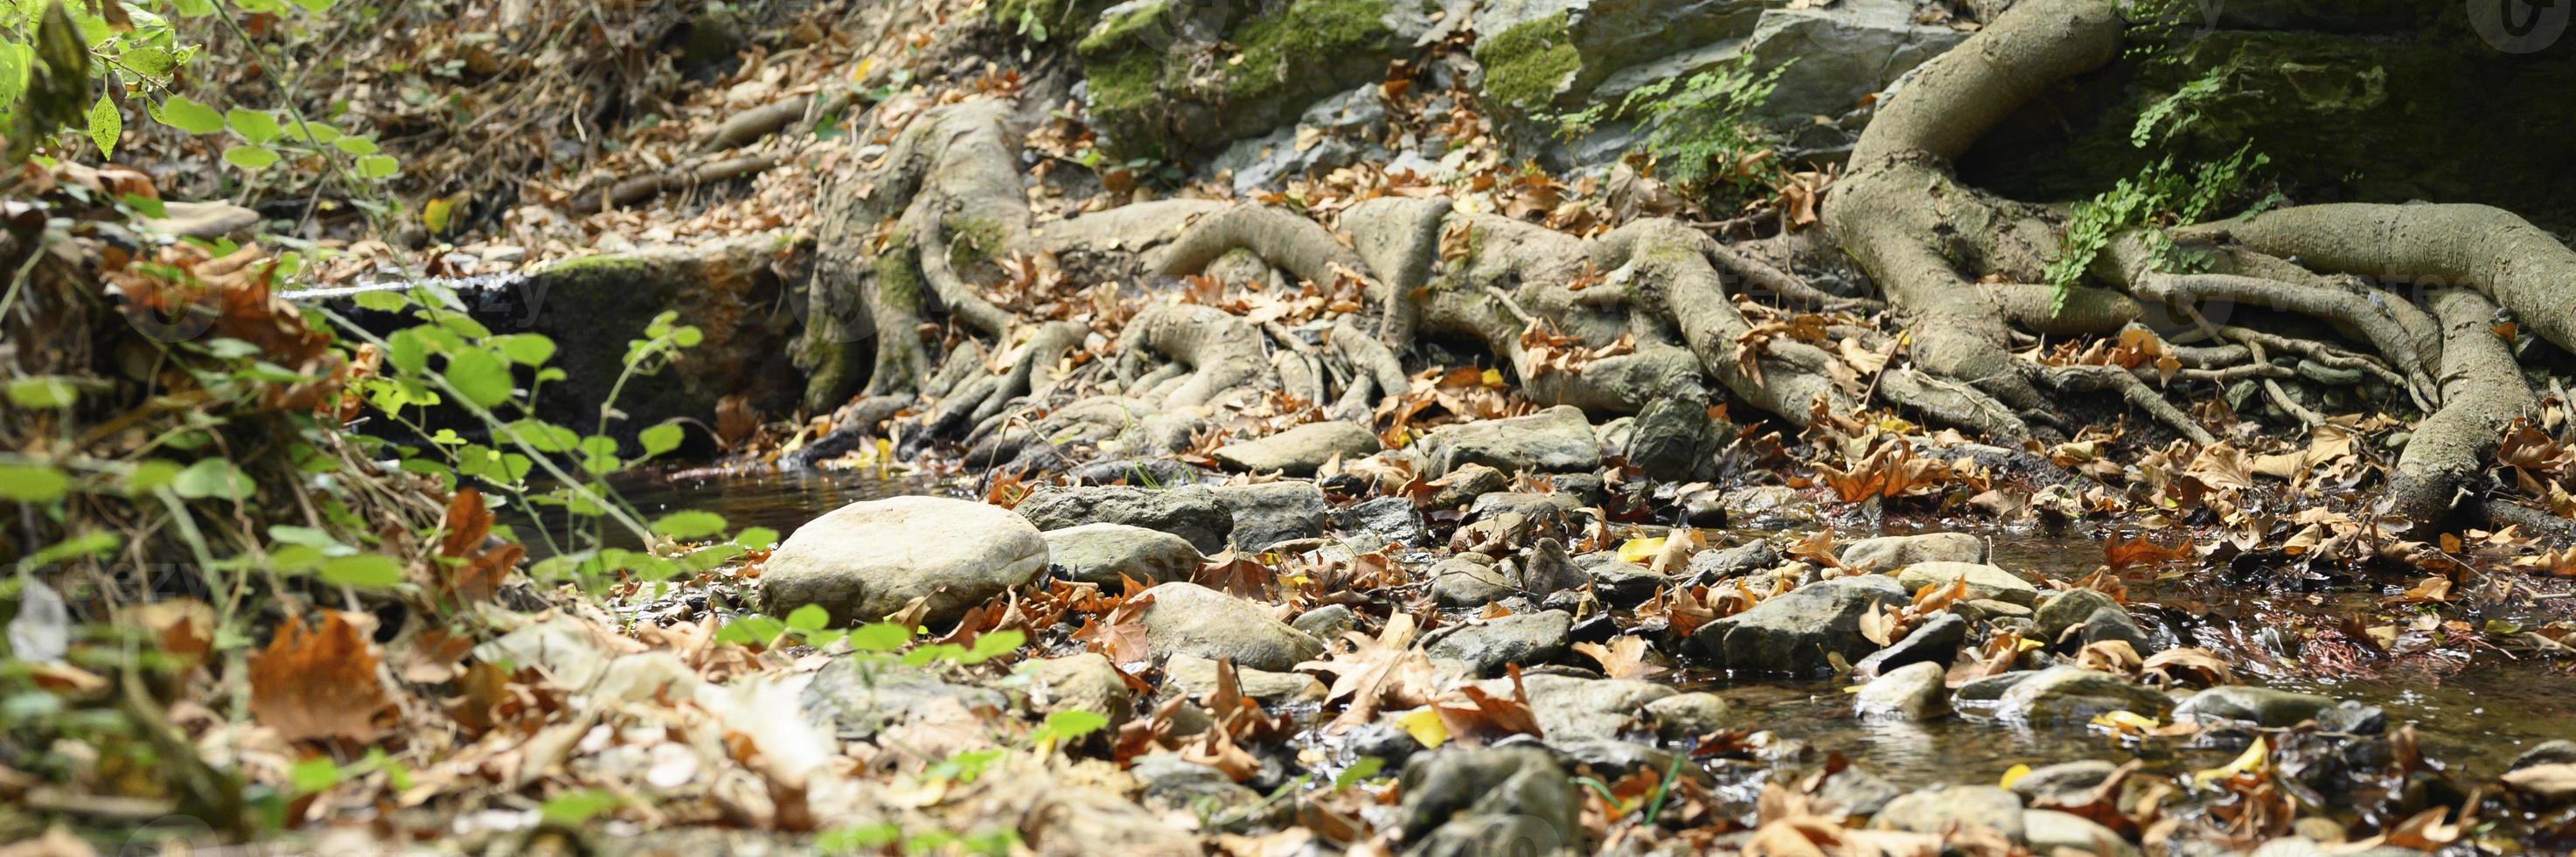 kala rötter av träd som växer i steniga klippor mellan stenar och vatten på hösten foto